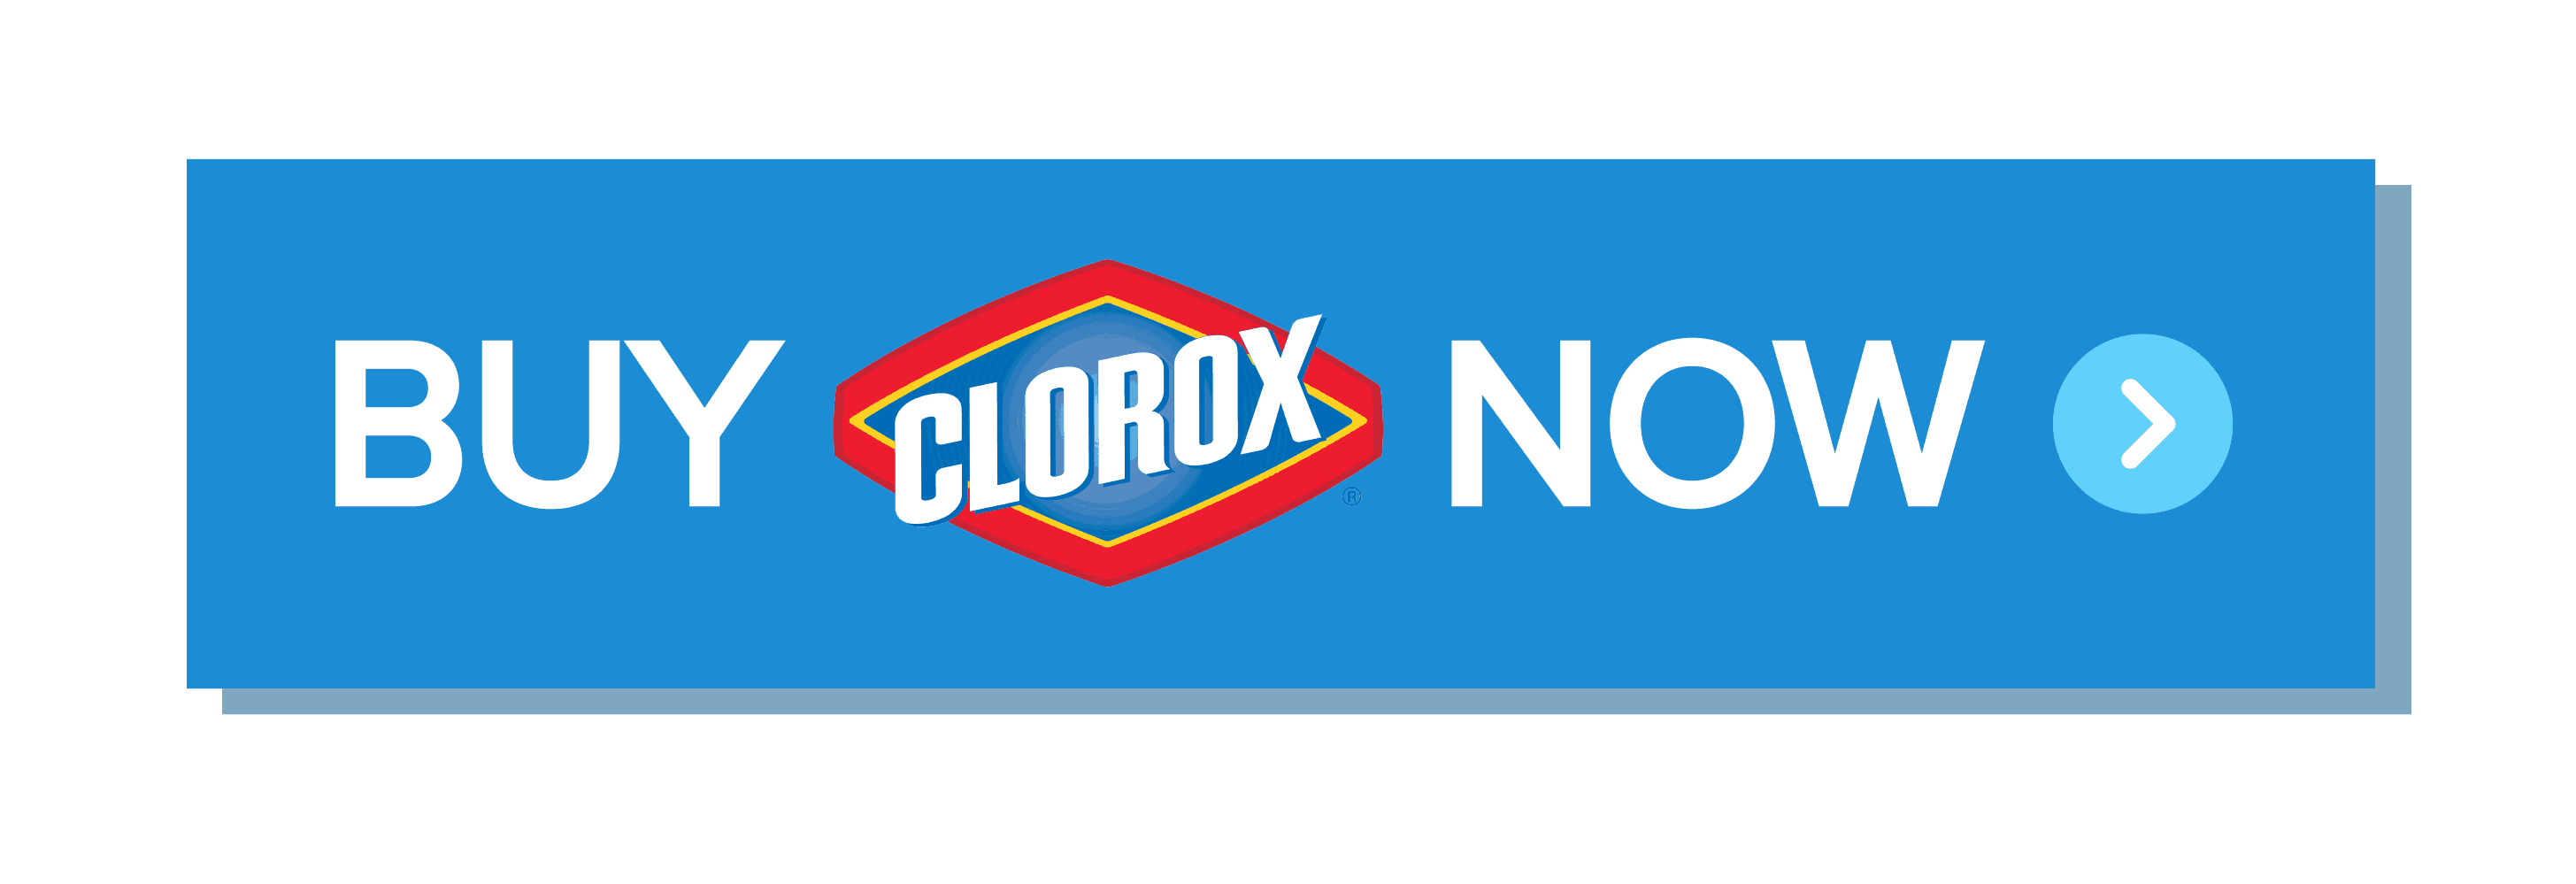 Clorox at Walmart